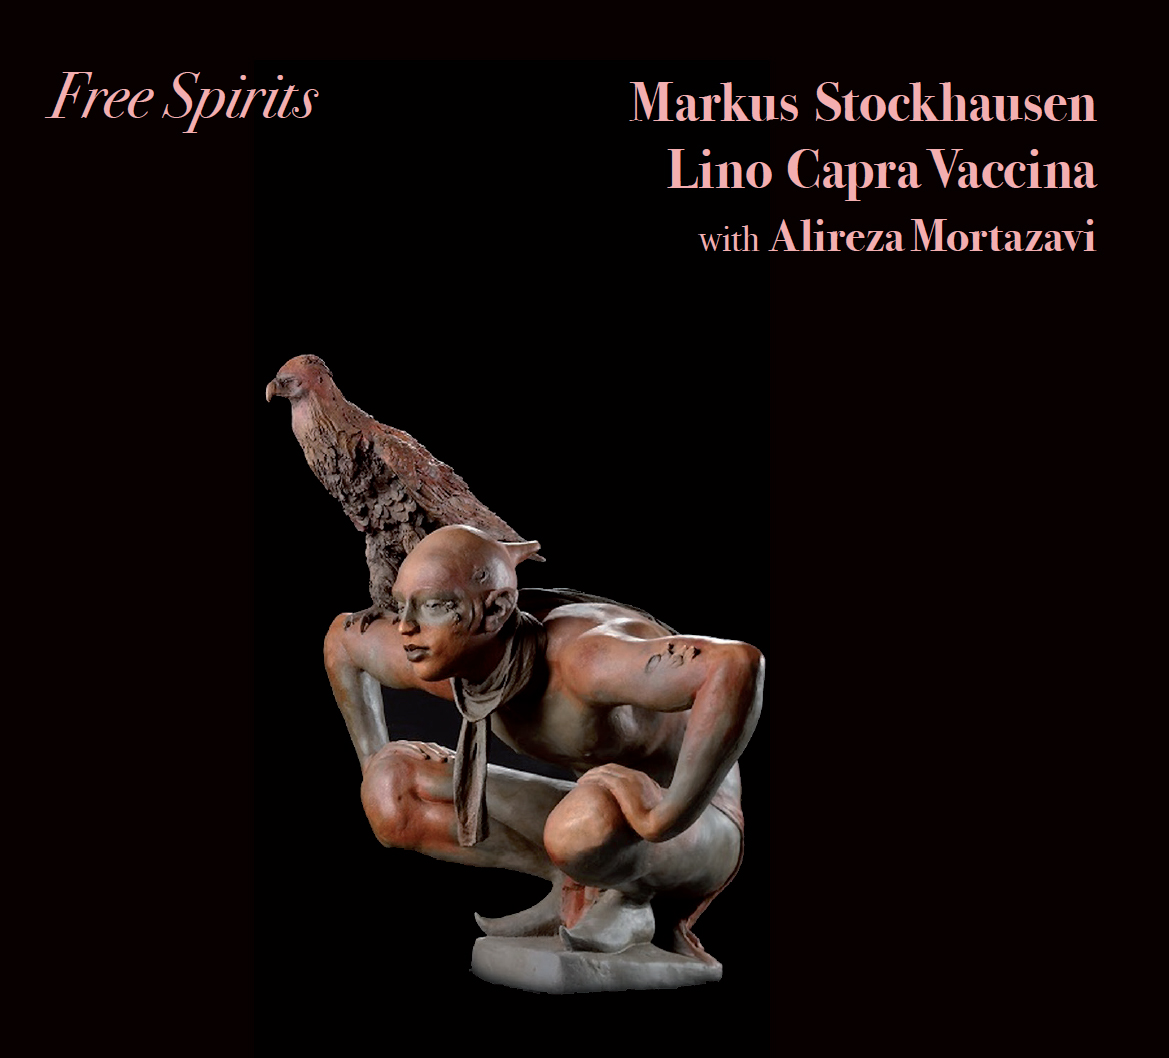 Markus Stockhausen, Capra Vaccina, Mortazavi – Free Spirits